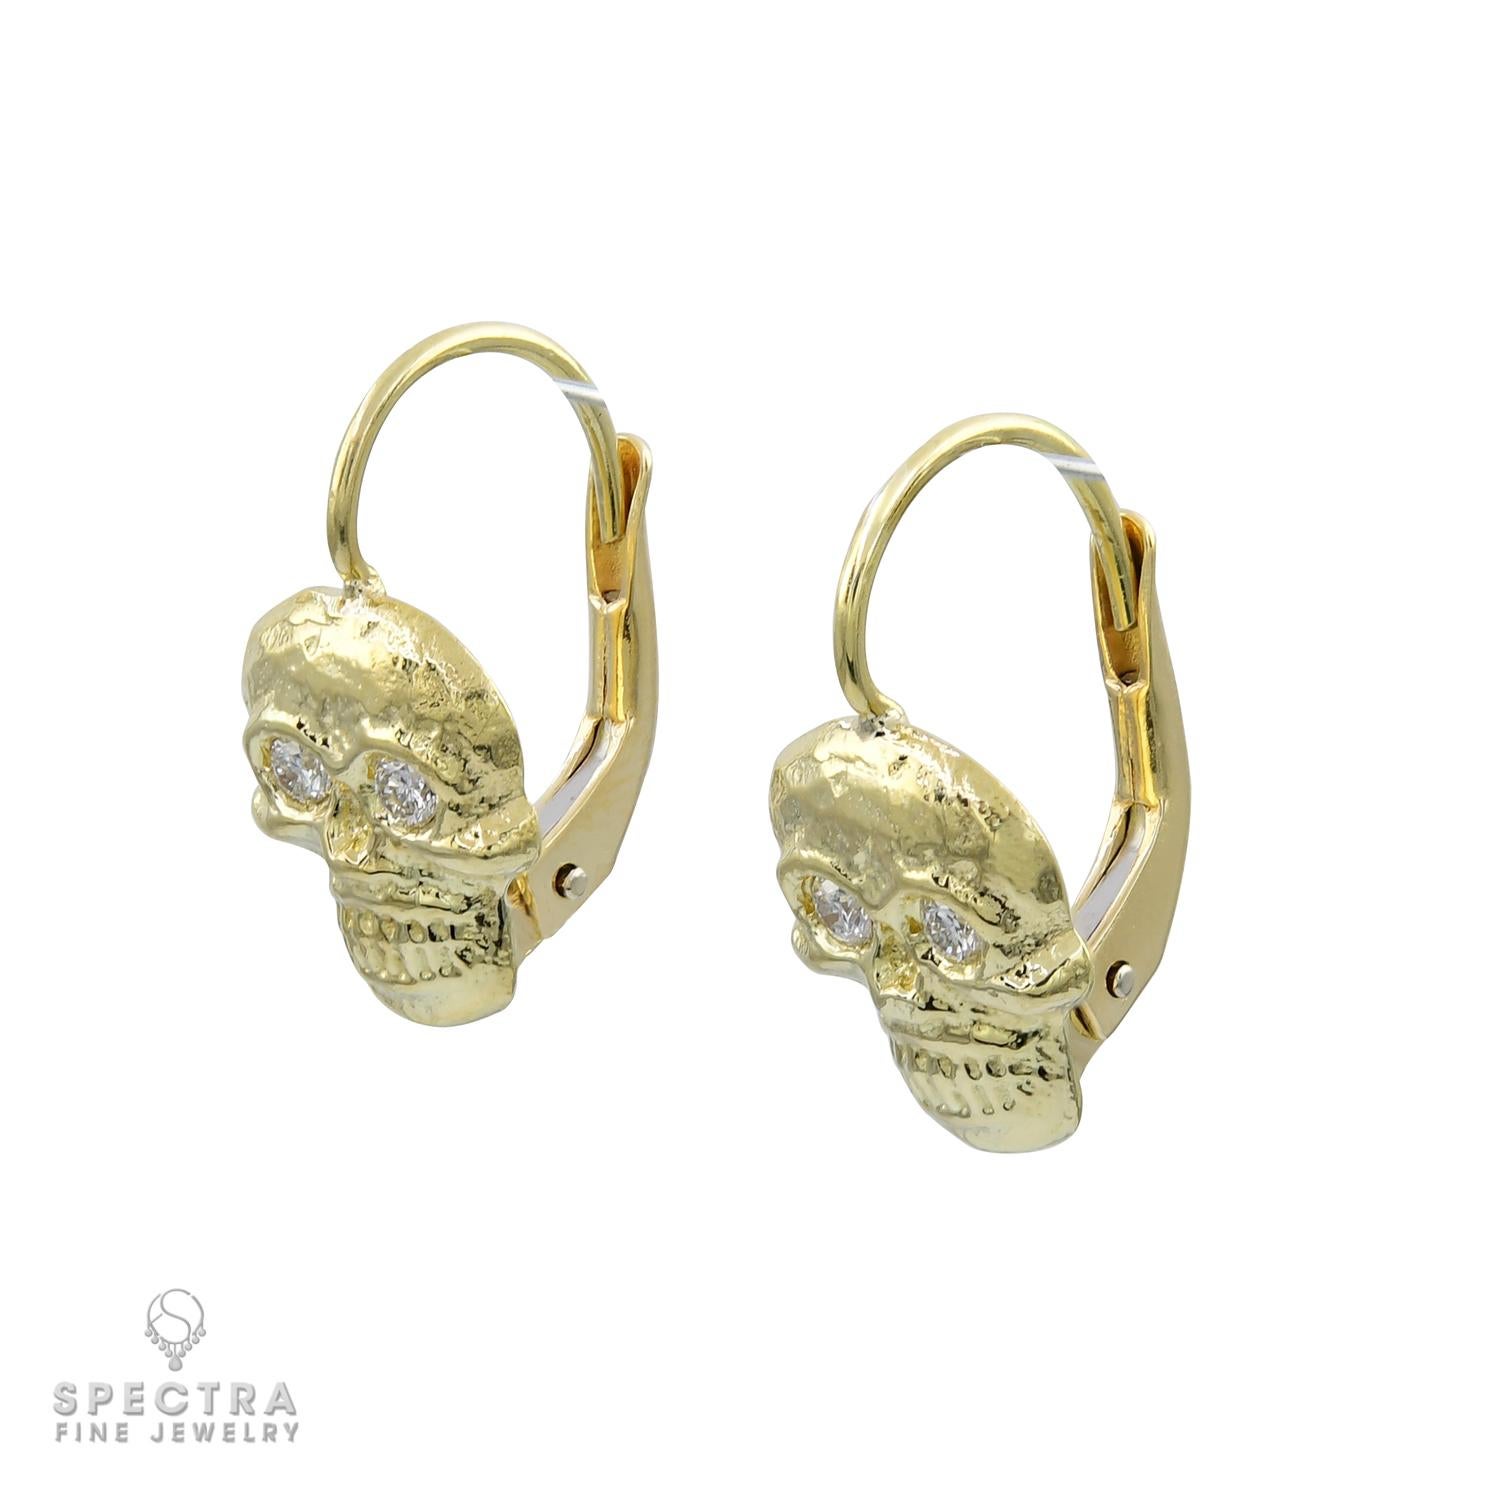 Ces jolies boucles d'oreilles aux motifs de crâne uniques sont réalisées en or jaune 18 carats lustré. Elles pèsent au total 4,80 grammes et mesurent environ 0,5 pouce de long. Les crânes détaillés sont conçus pour pendre élégamment aux lobes